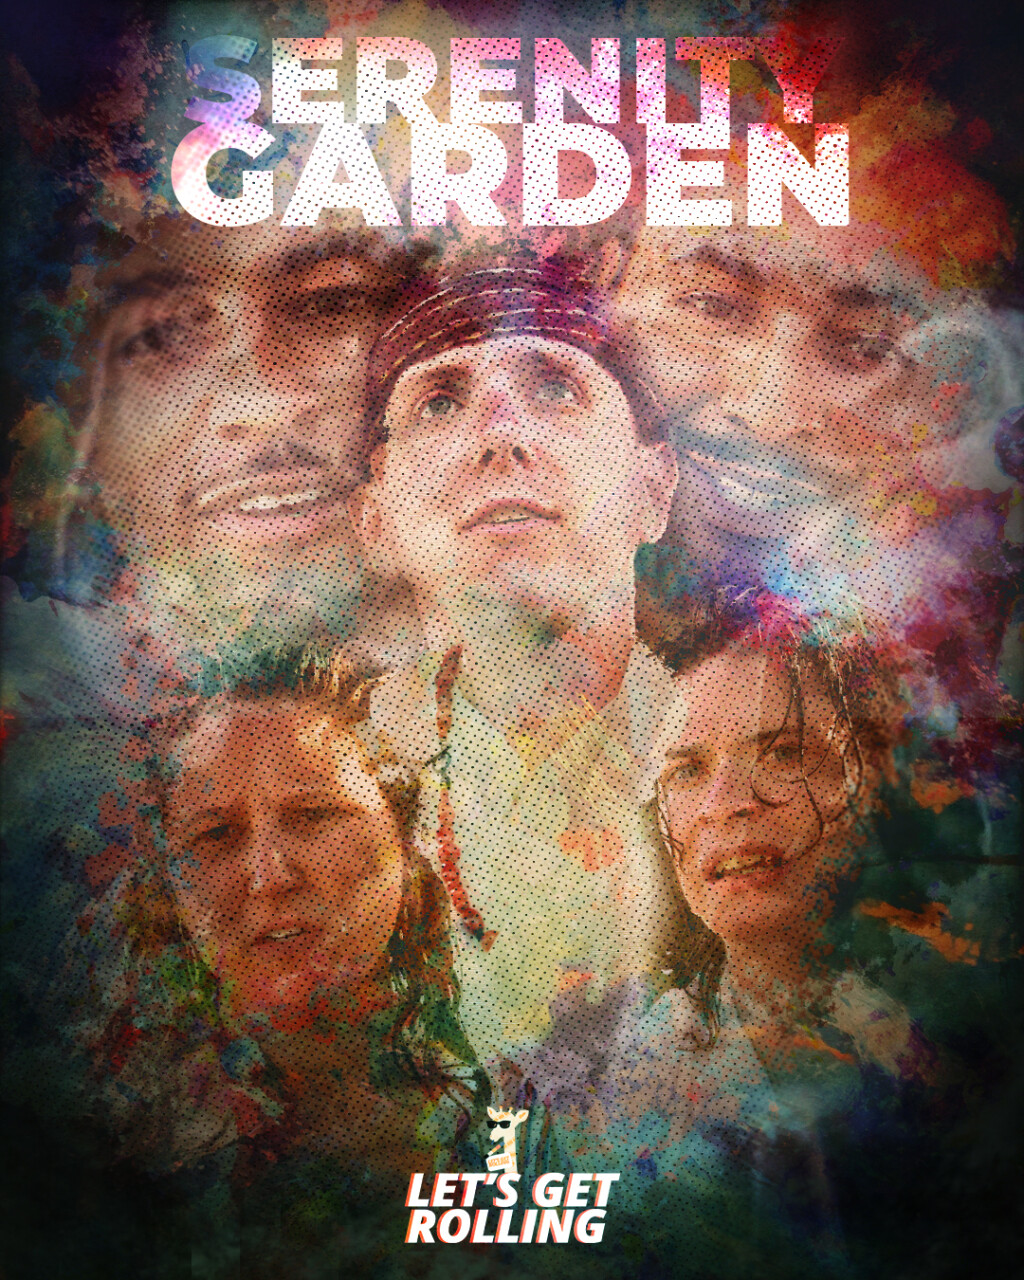 Filmposter for Serenity Garden